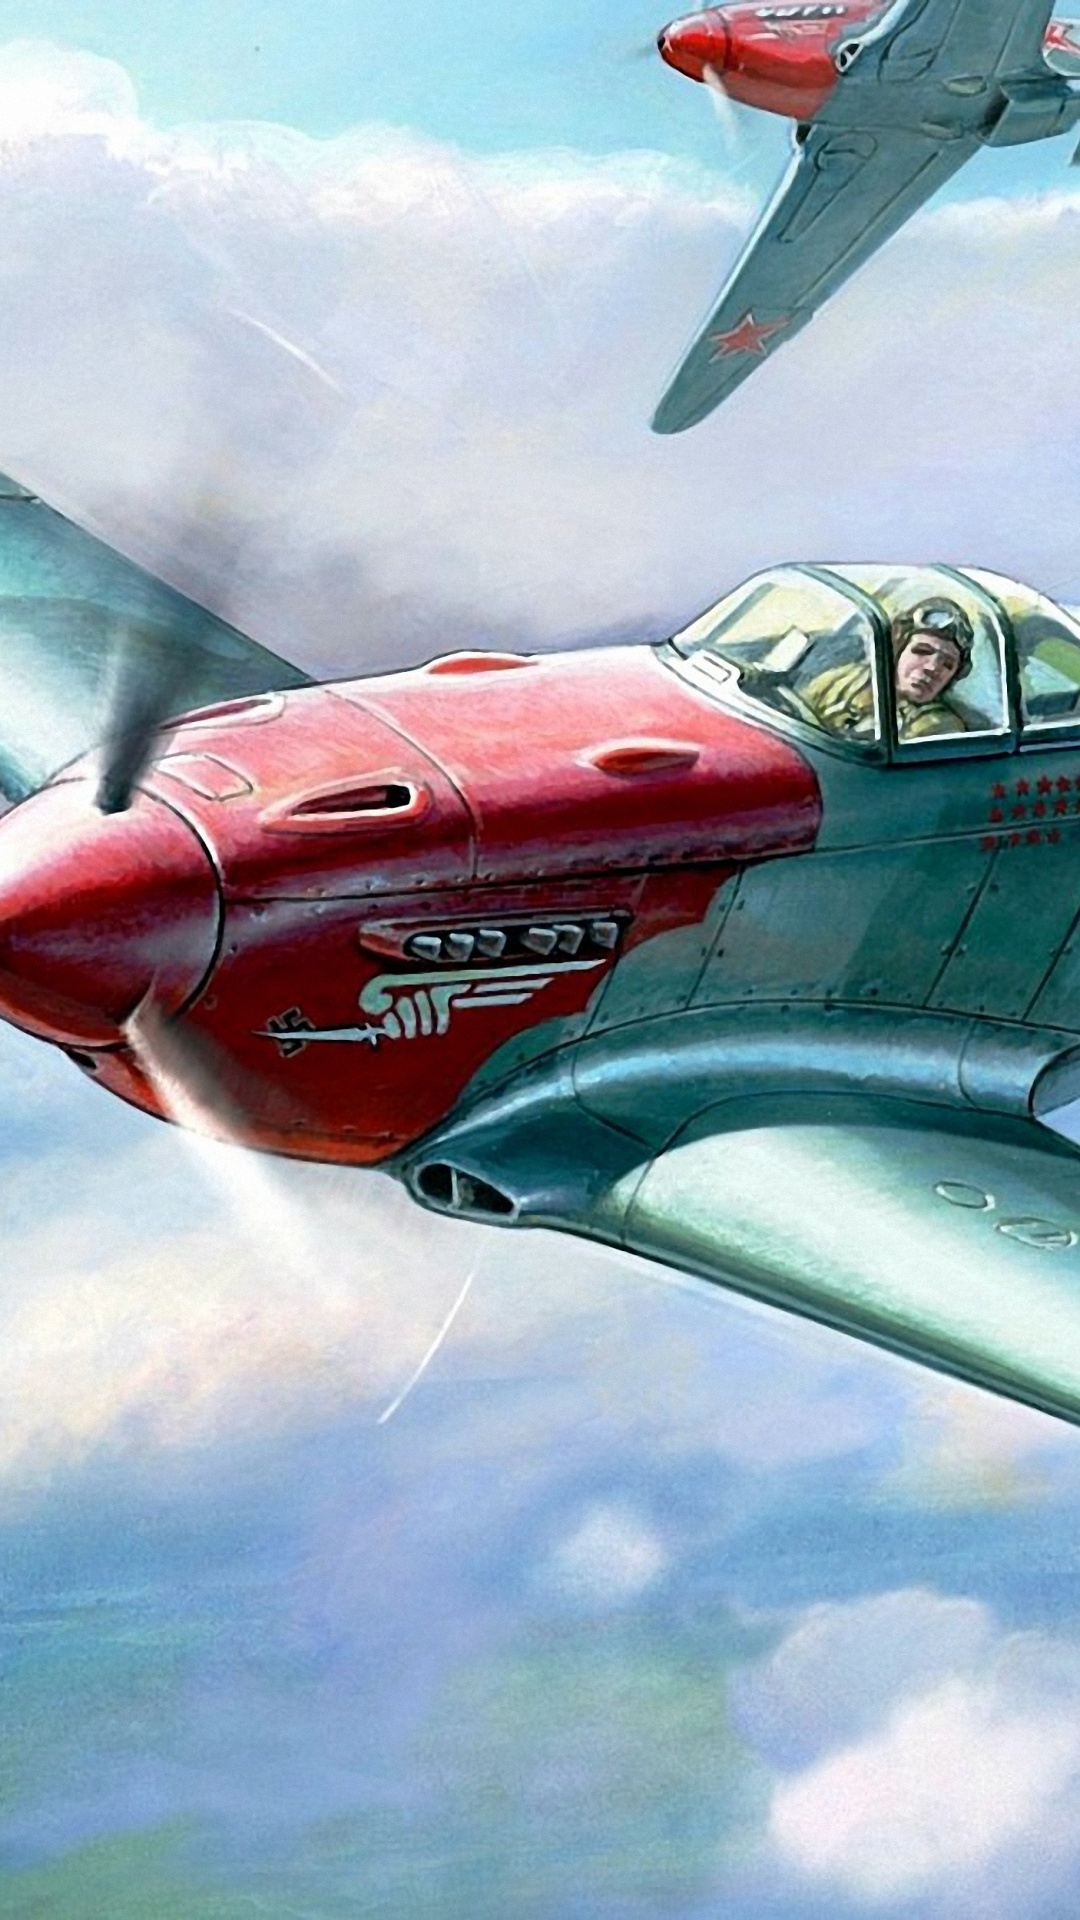 Avión a Reacción Rojo y Gris en el Aire.. Wallpaper in 1080x1920 Resolution